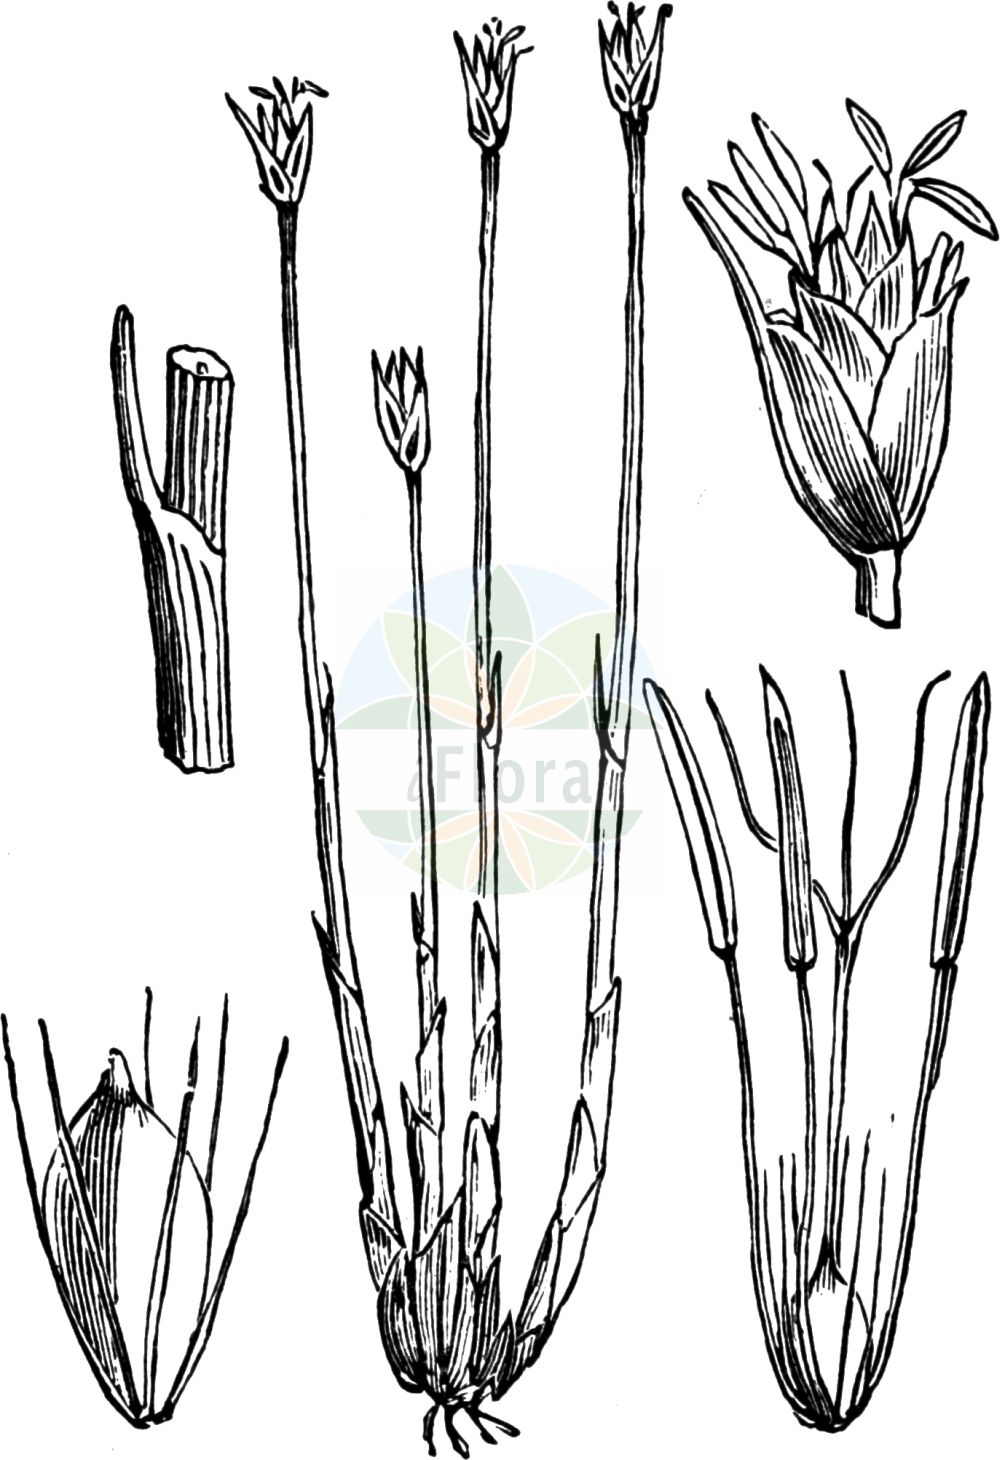 Historische Abbildung von Trichophorum cespitosum (Rasenbinse - Deergrass). Das Bild zeigt Blatt, Bluete, Frucht und Same. ---- Historical Drawing of Trichophorum cespitosum (Rasenbinse - Deergrass). The image is showing leaf, flower, fruit and seed.(Trichophorum cespitosum,Rasenbinse,Deergrass,Baeothryon caespitosum,Scirpus cespitosus,Trichophorum cespitosum,Rasenbinse,Deutsche Rasenbinse,Echte Rasenbinse,Rasenbinse i.w.S.,Deergrass,Trichophorum,Rasenbinse,Bulrush,Cyperaceae,Sauergräser,Sedge family,Blatt,Bluete,Frucht,Same,leaf,flower,fruit,seed,Fitch et al. (1880))